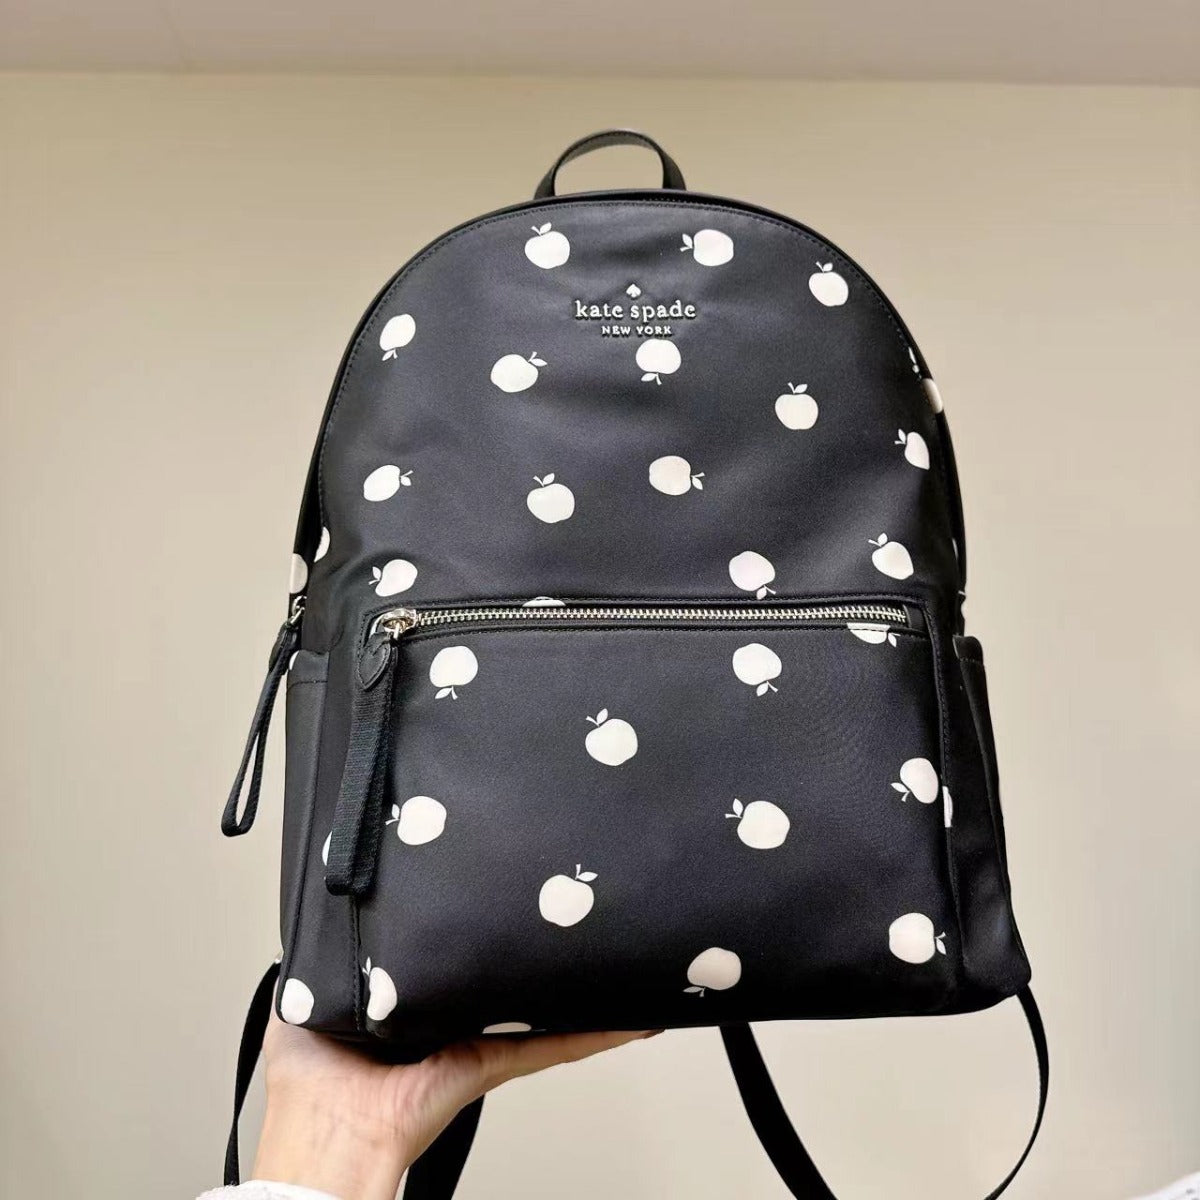 Kate Spade K9248 Chelsea Little Better Nylon Large Backpack In Black Multi